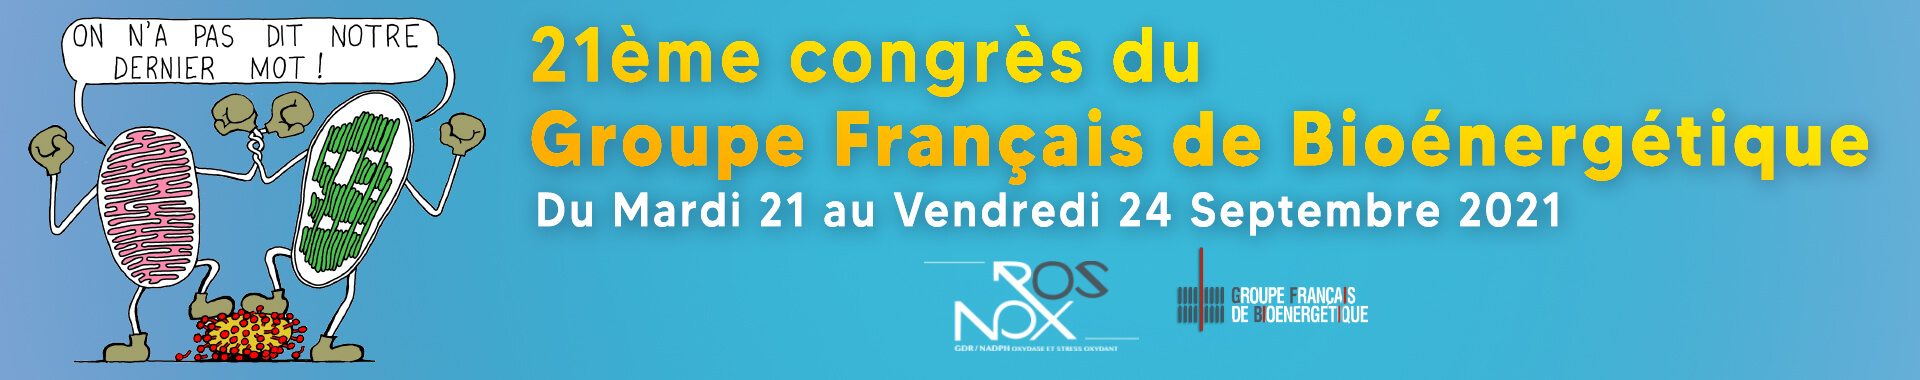 21ème congrès du Groupe Français de Bioénergétique